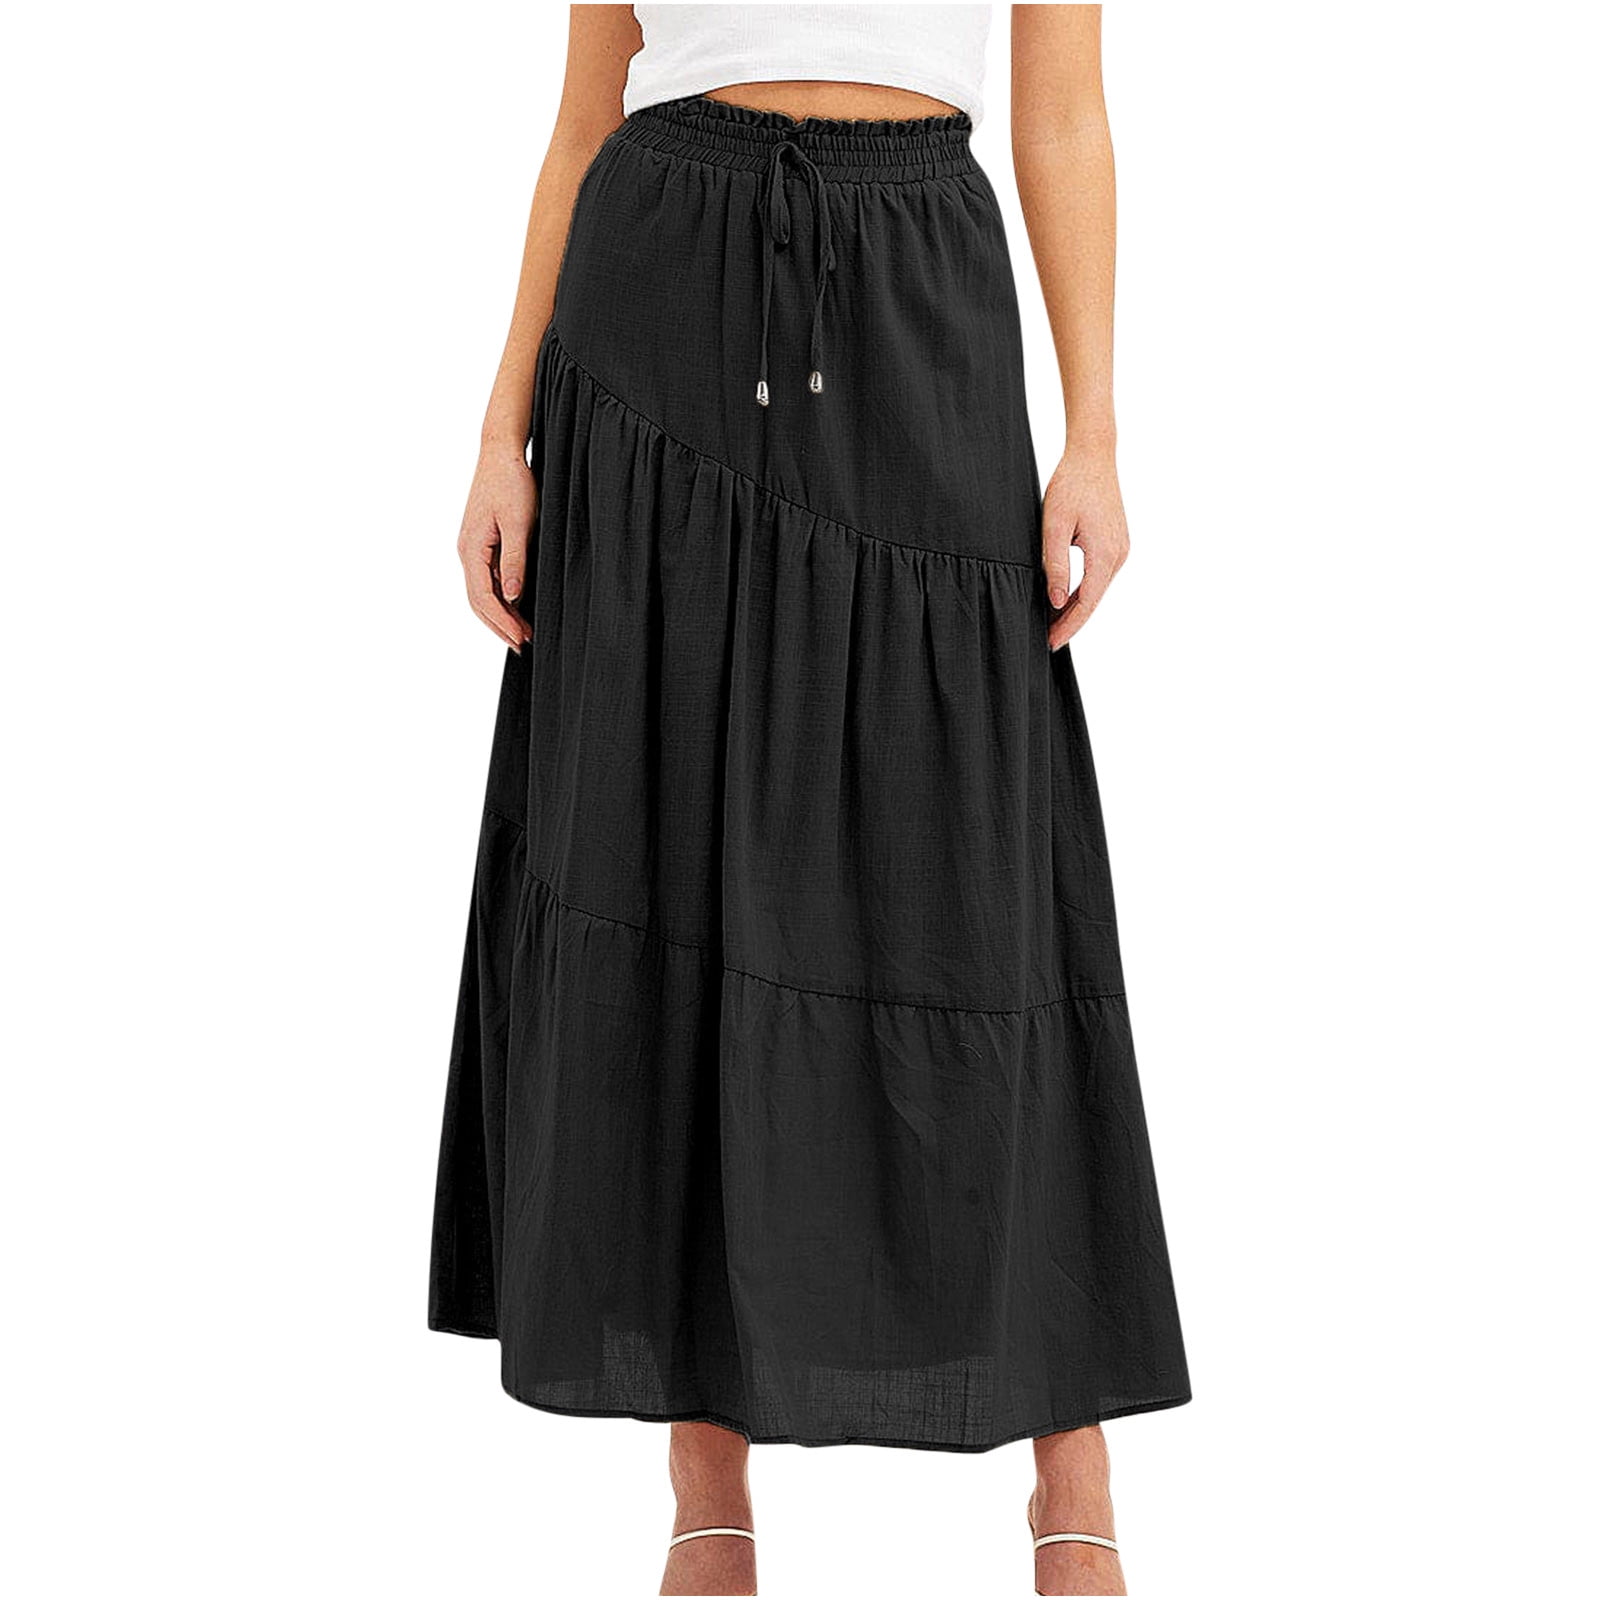 Women Long Cotton Maxi Skirt Boho Summer Casual Swing Ruffle Fashion Black